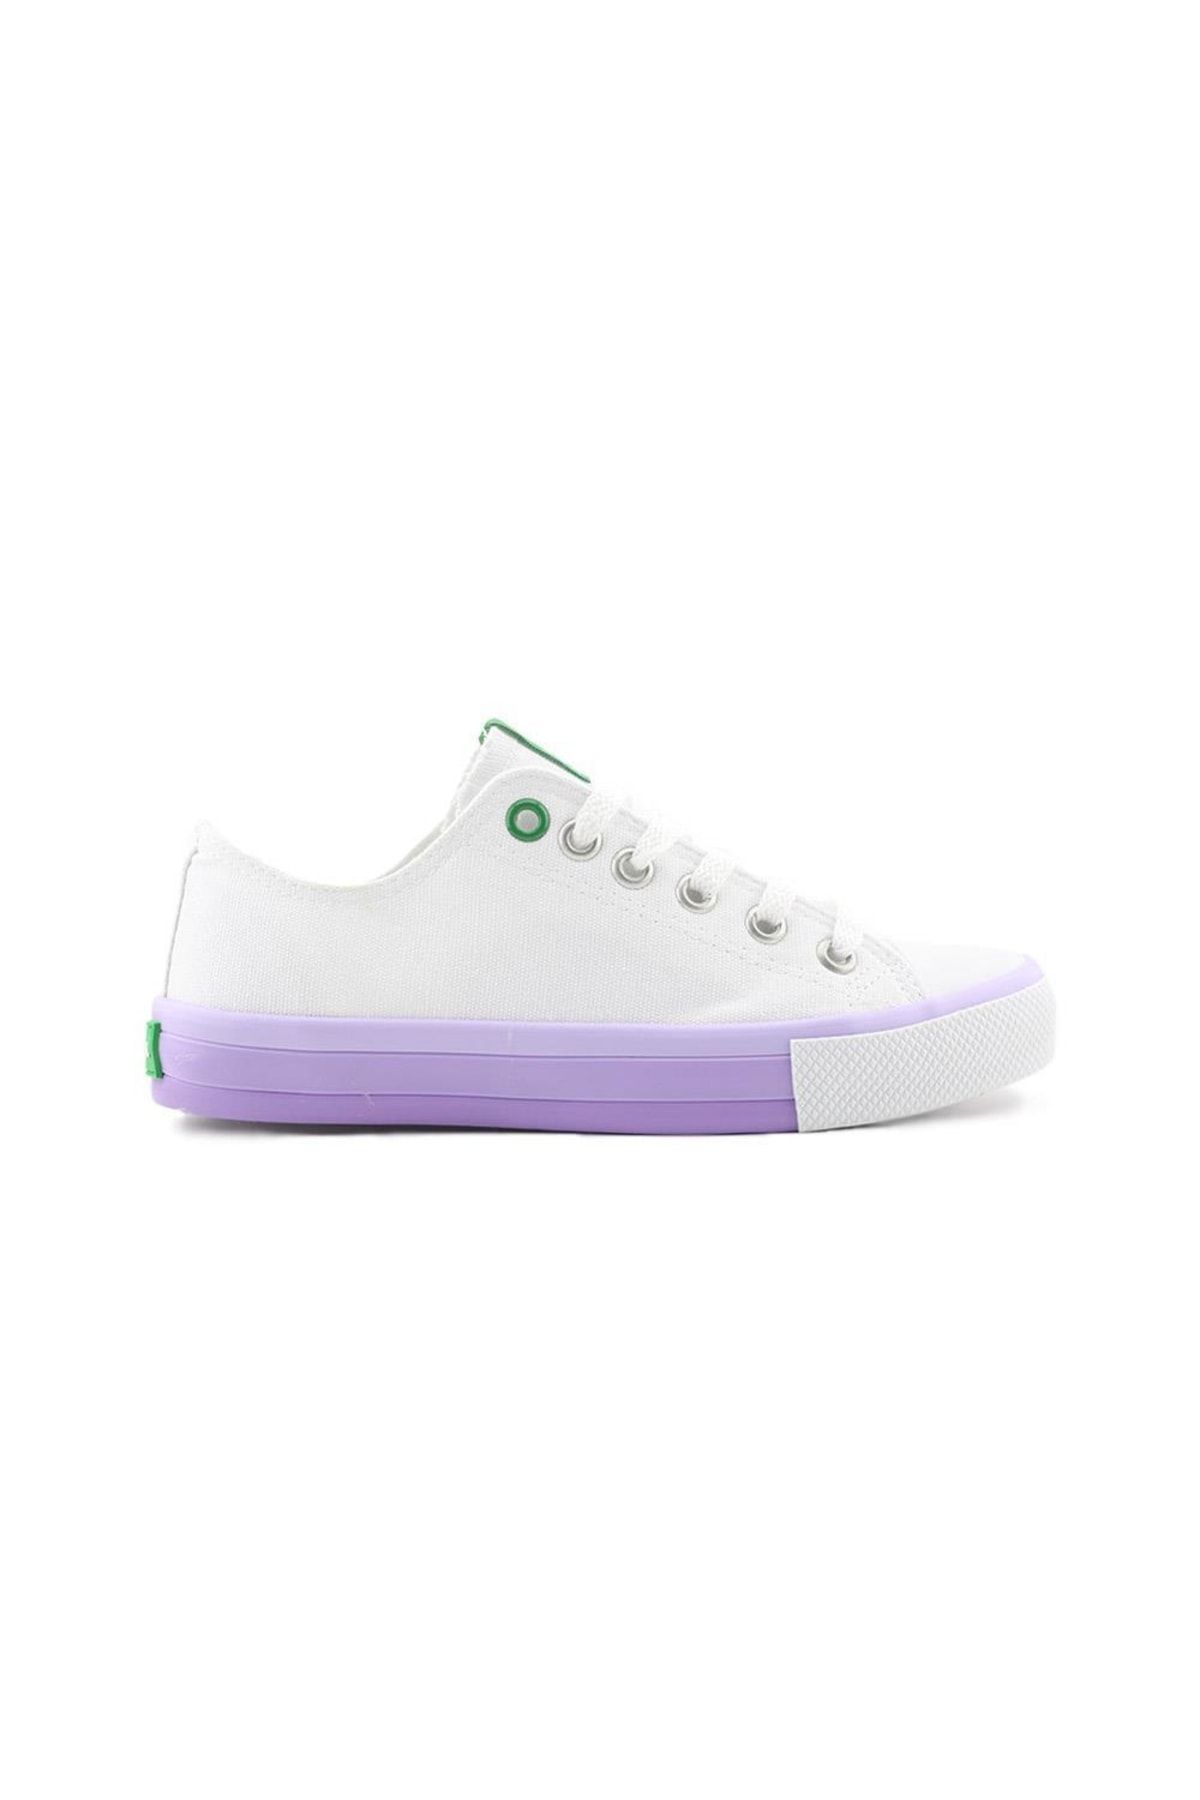 Benetton Kadın Spor Ayakkabısı Beyaz Lila